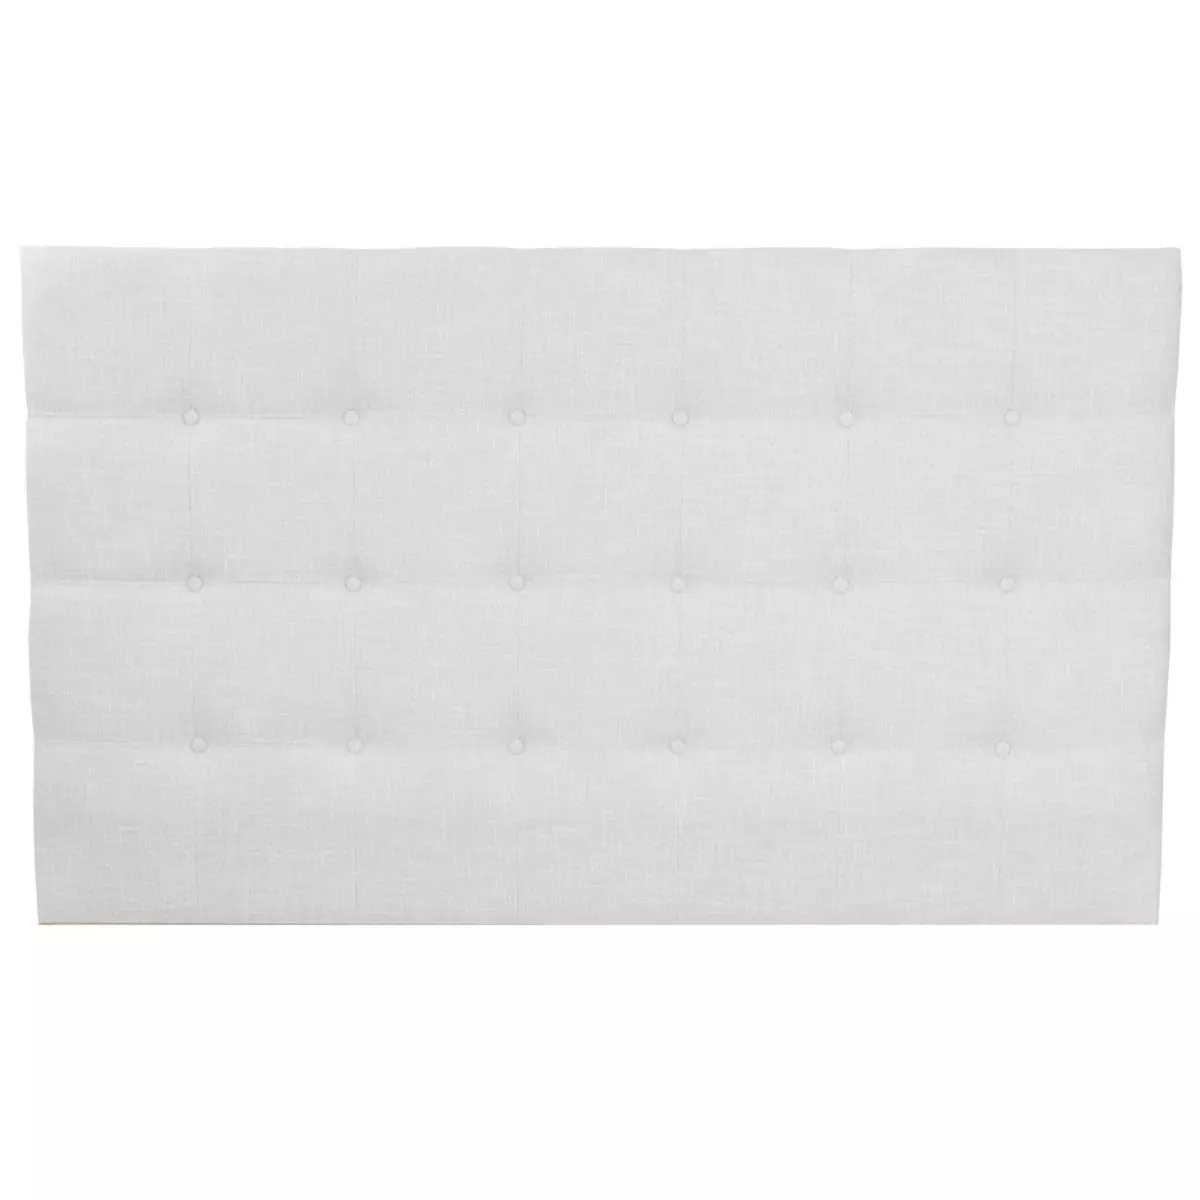 HOMIFAB Tête de lit capitonnée en tissu gris clair 160 cm - Nino